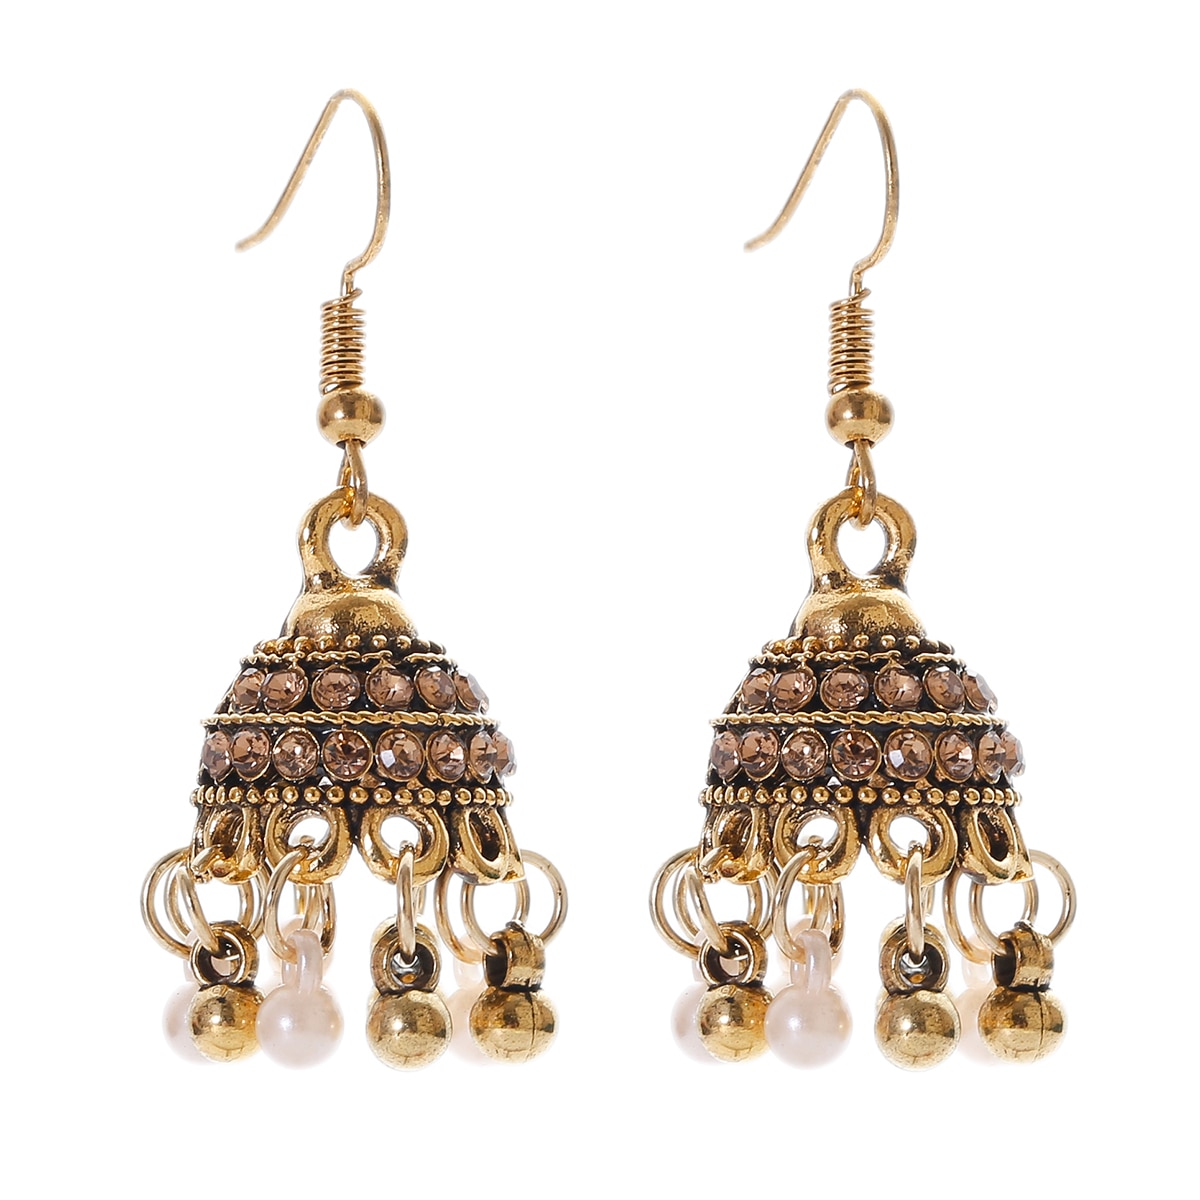 Retro-Classic-Small-Bell-CZ-Earrings-Women39s-Ethnic-Pearl-Tassel-Earrings-Piercing-Wedding-Jewelry--3256804108684137-6